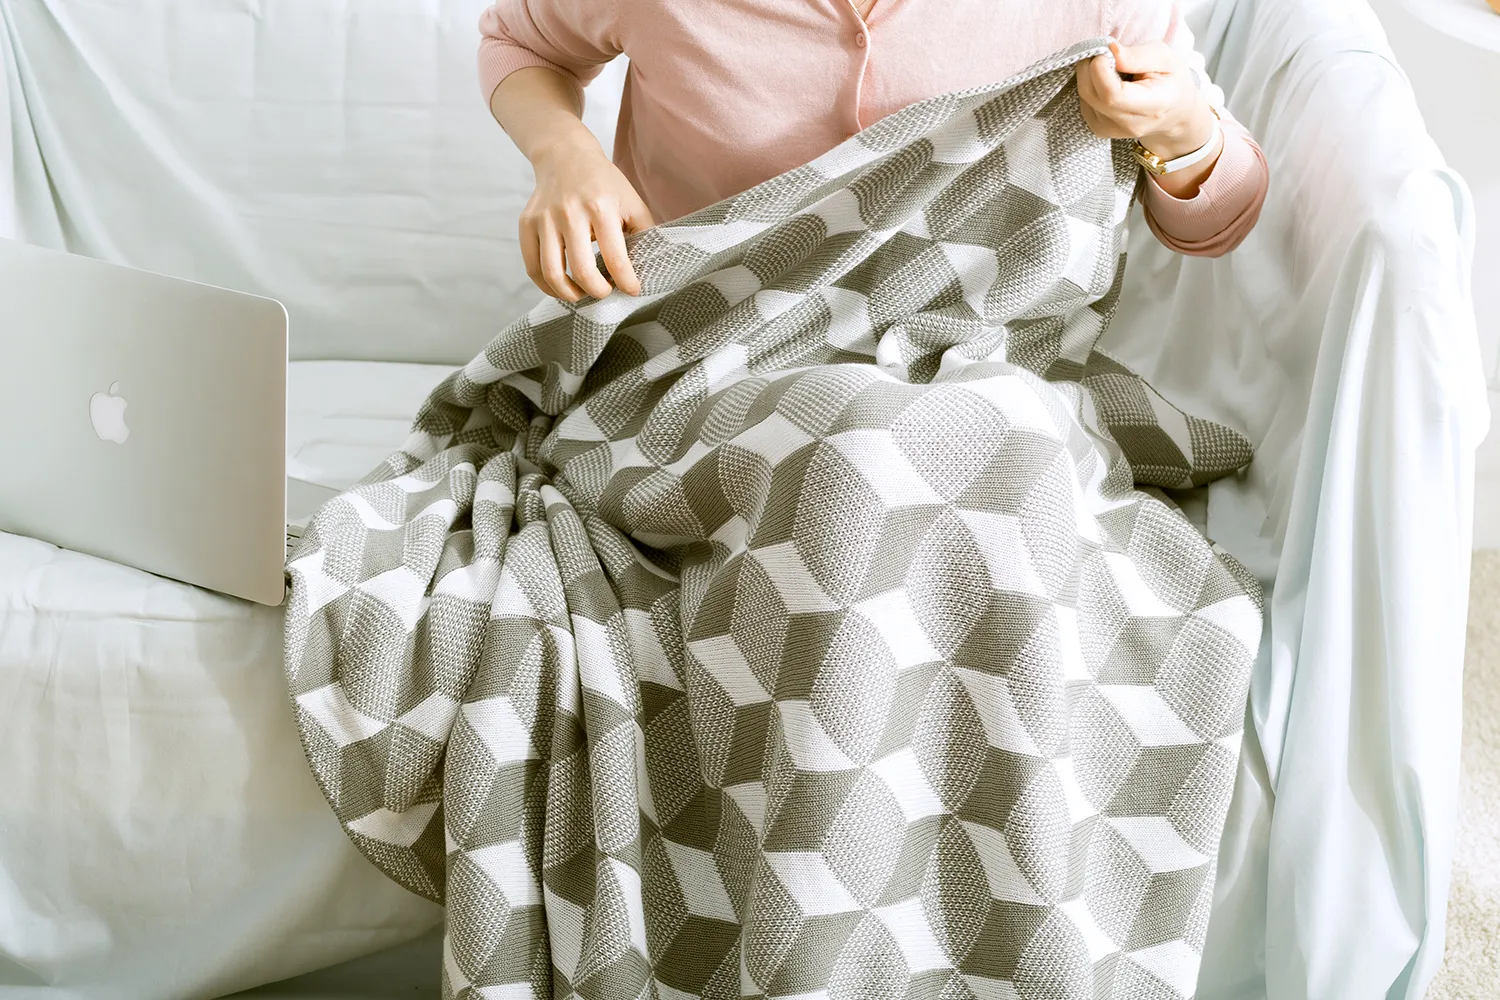 REGINA Home Textiles Couverture Jeter Bleu Royal Gris 3D Coton Crochet Housse De Canapé Couverture Chaud Femmes Châle Tapis Pour Salon